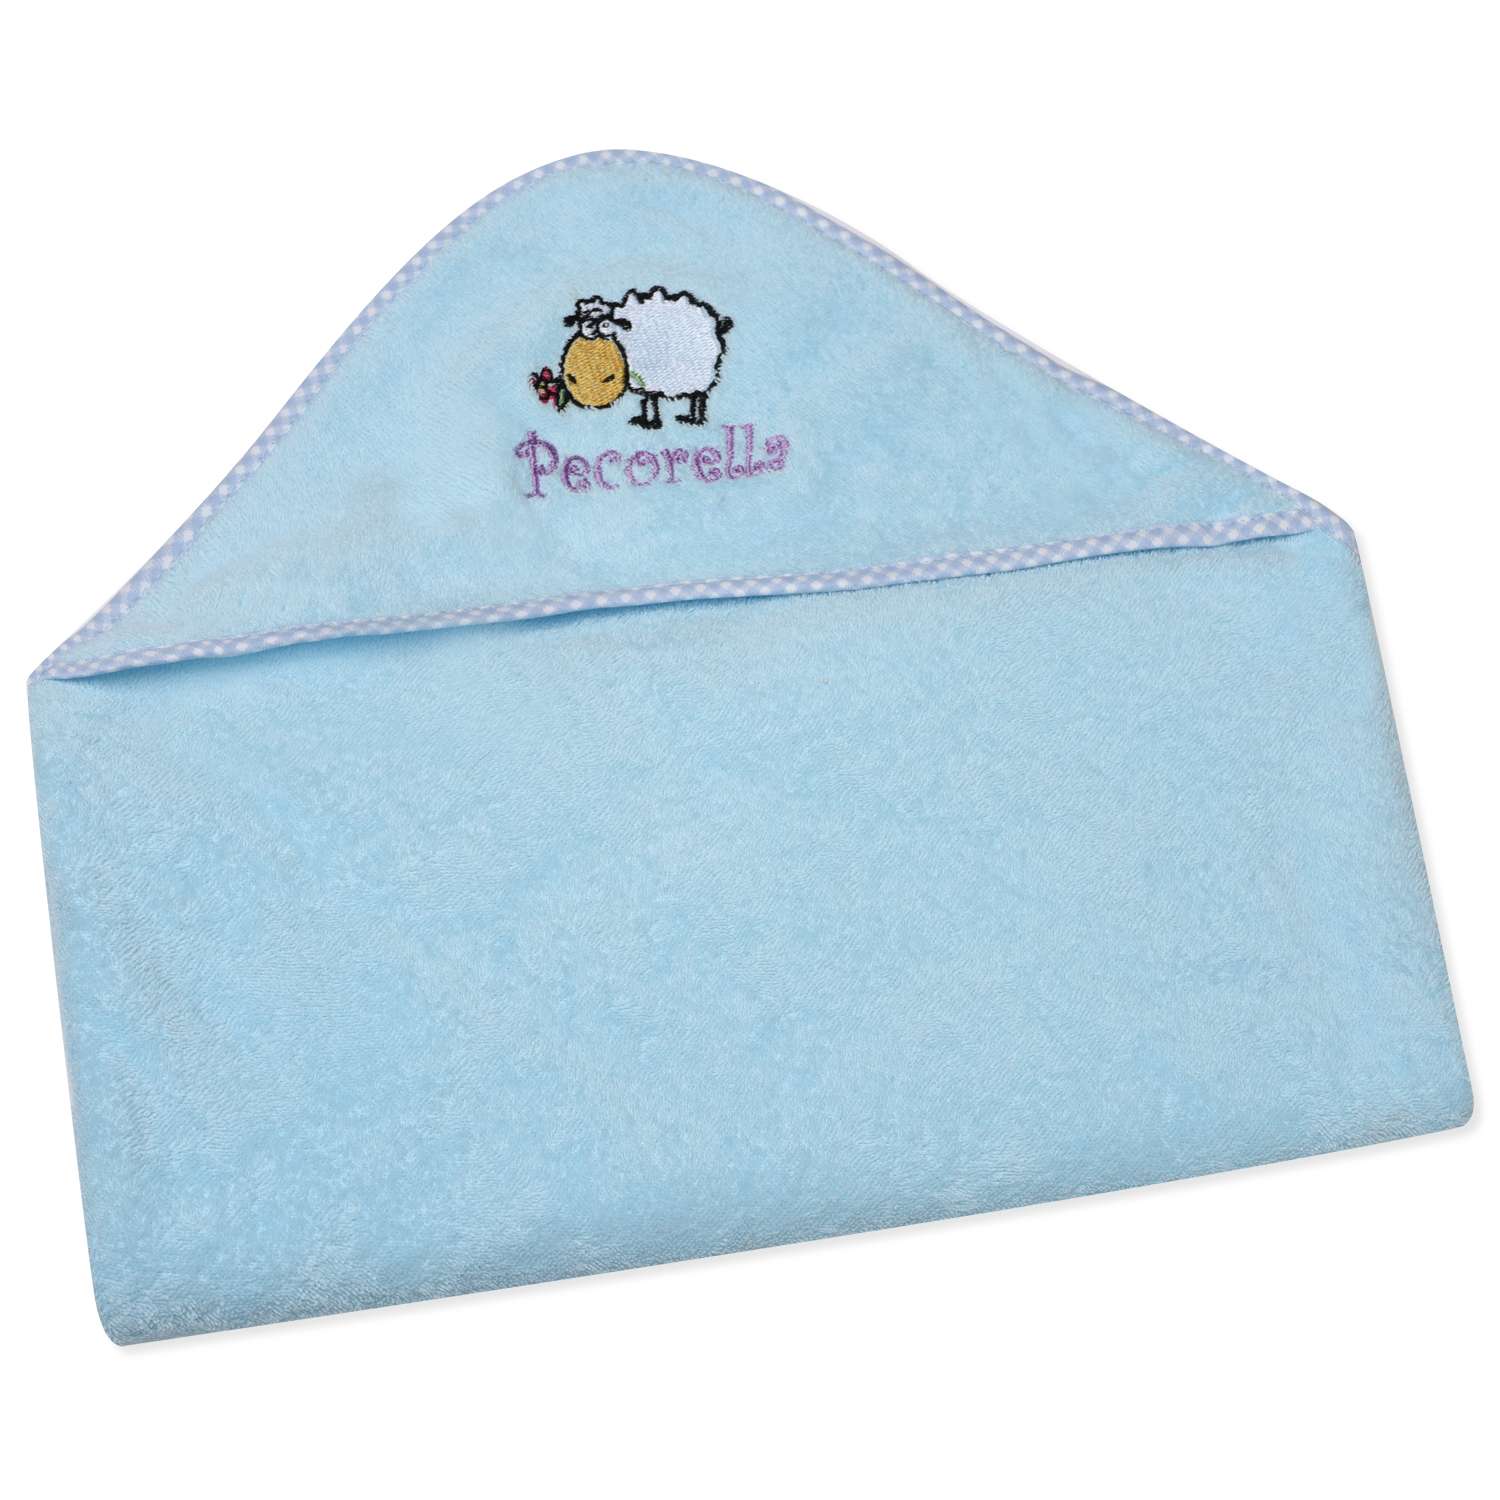 Полотенце с капюшоном Pecorella Голубое - фото 1